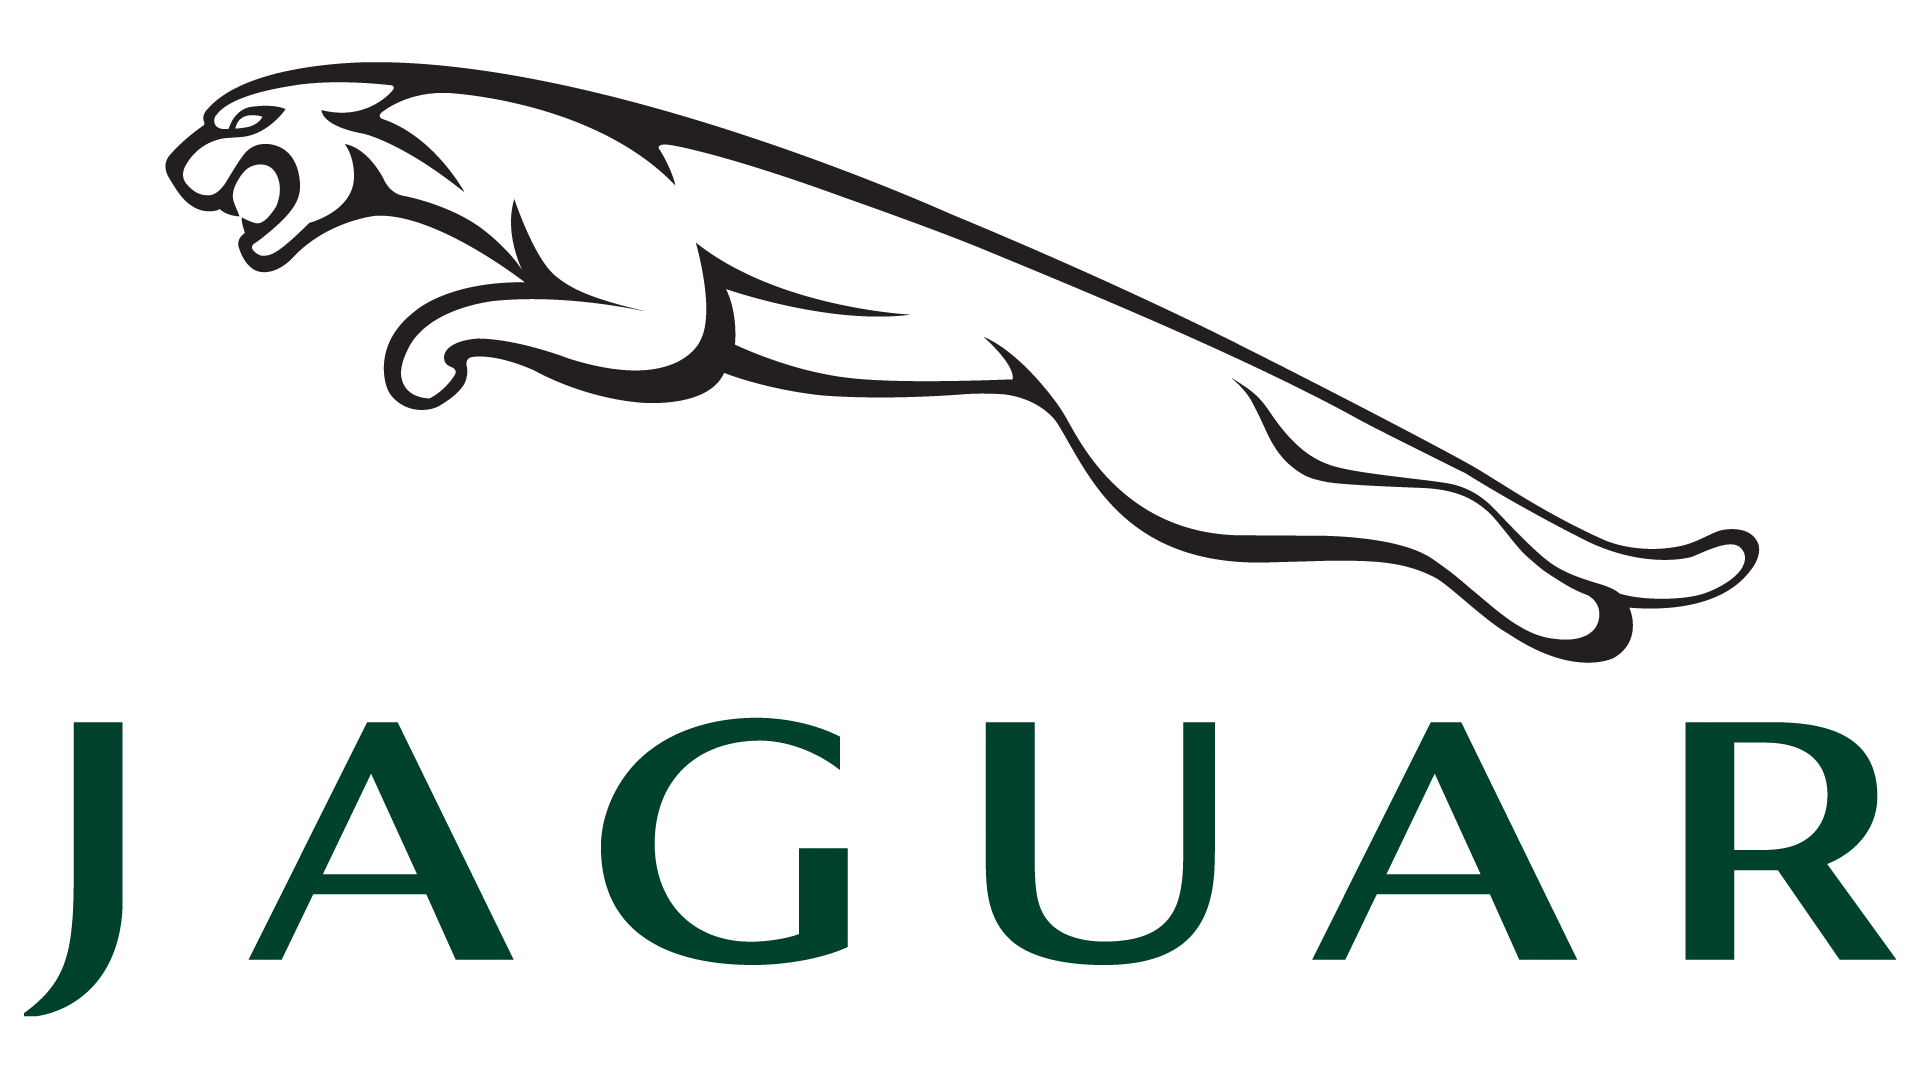 Jaguar Logo, HD Png, Meaning, Information | Carlogos.org